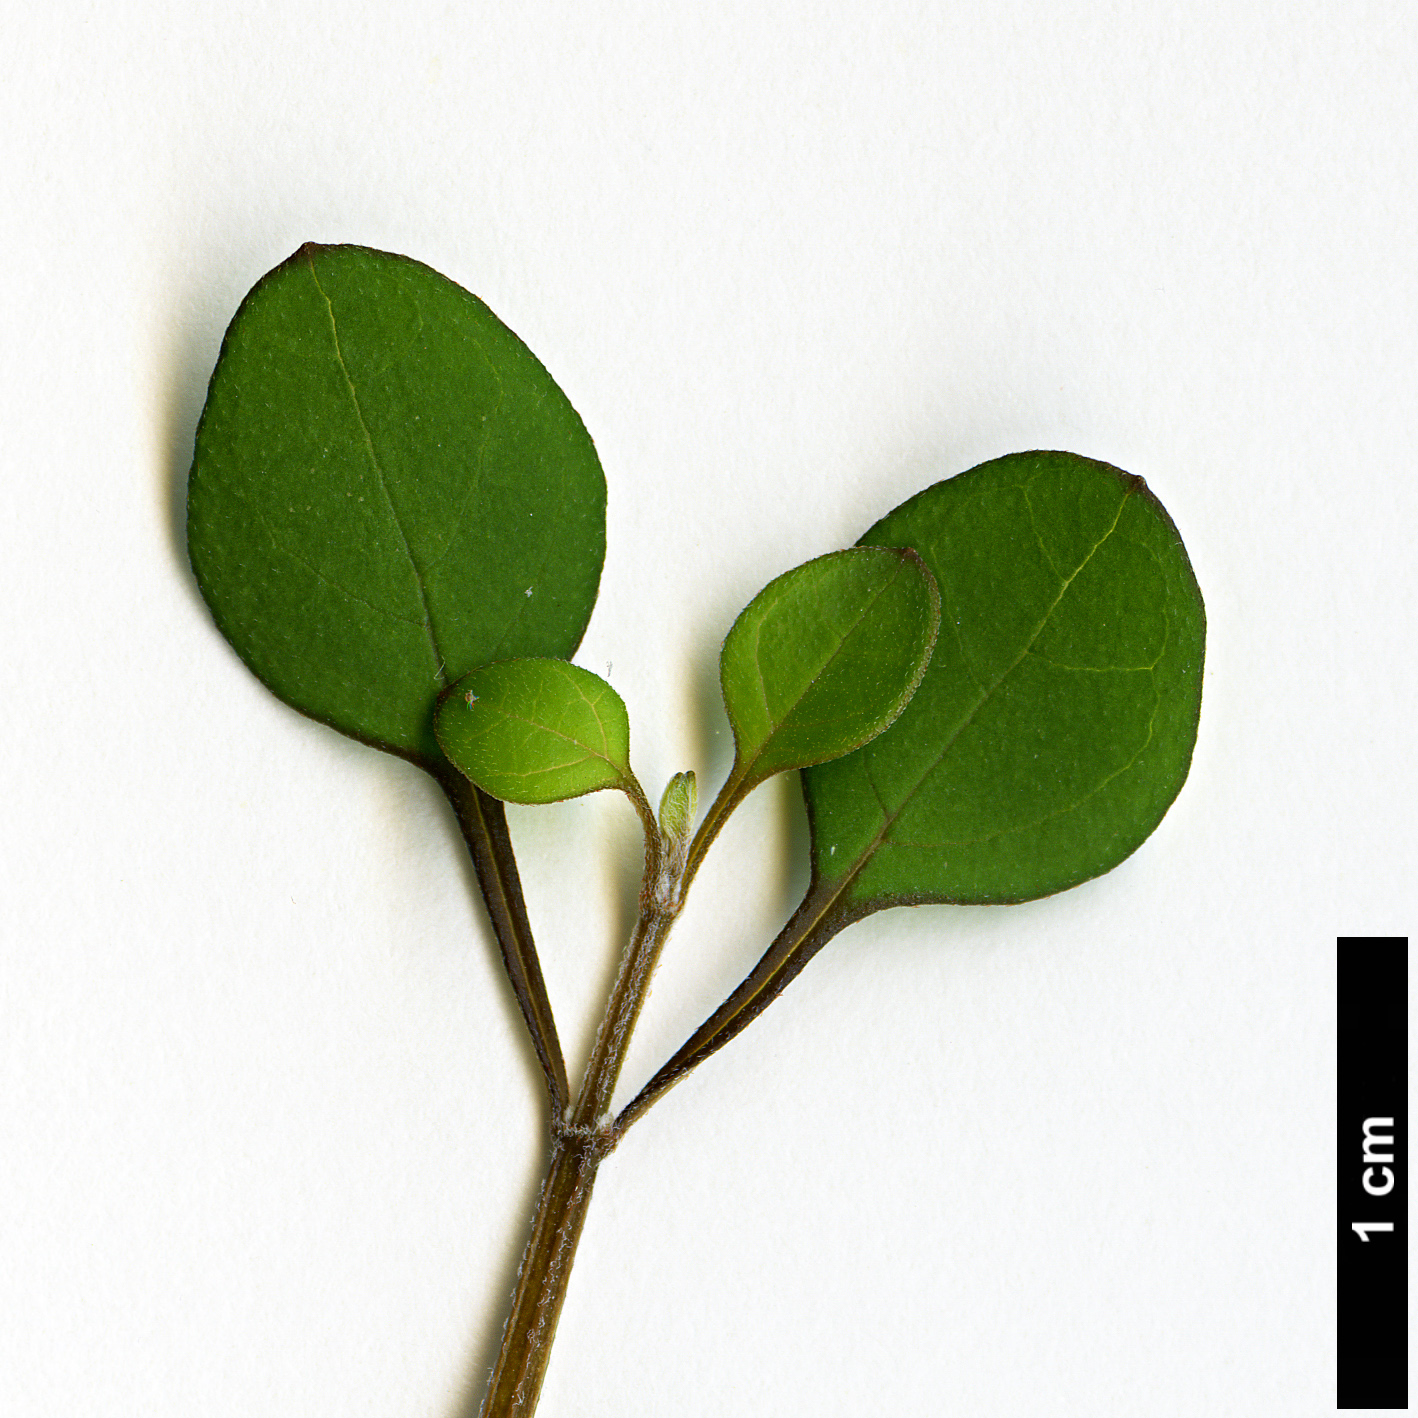 High resolution image: Family: Lamiaceae - Genus: Teucridium - Taxon: parvifolium